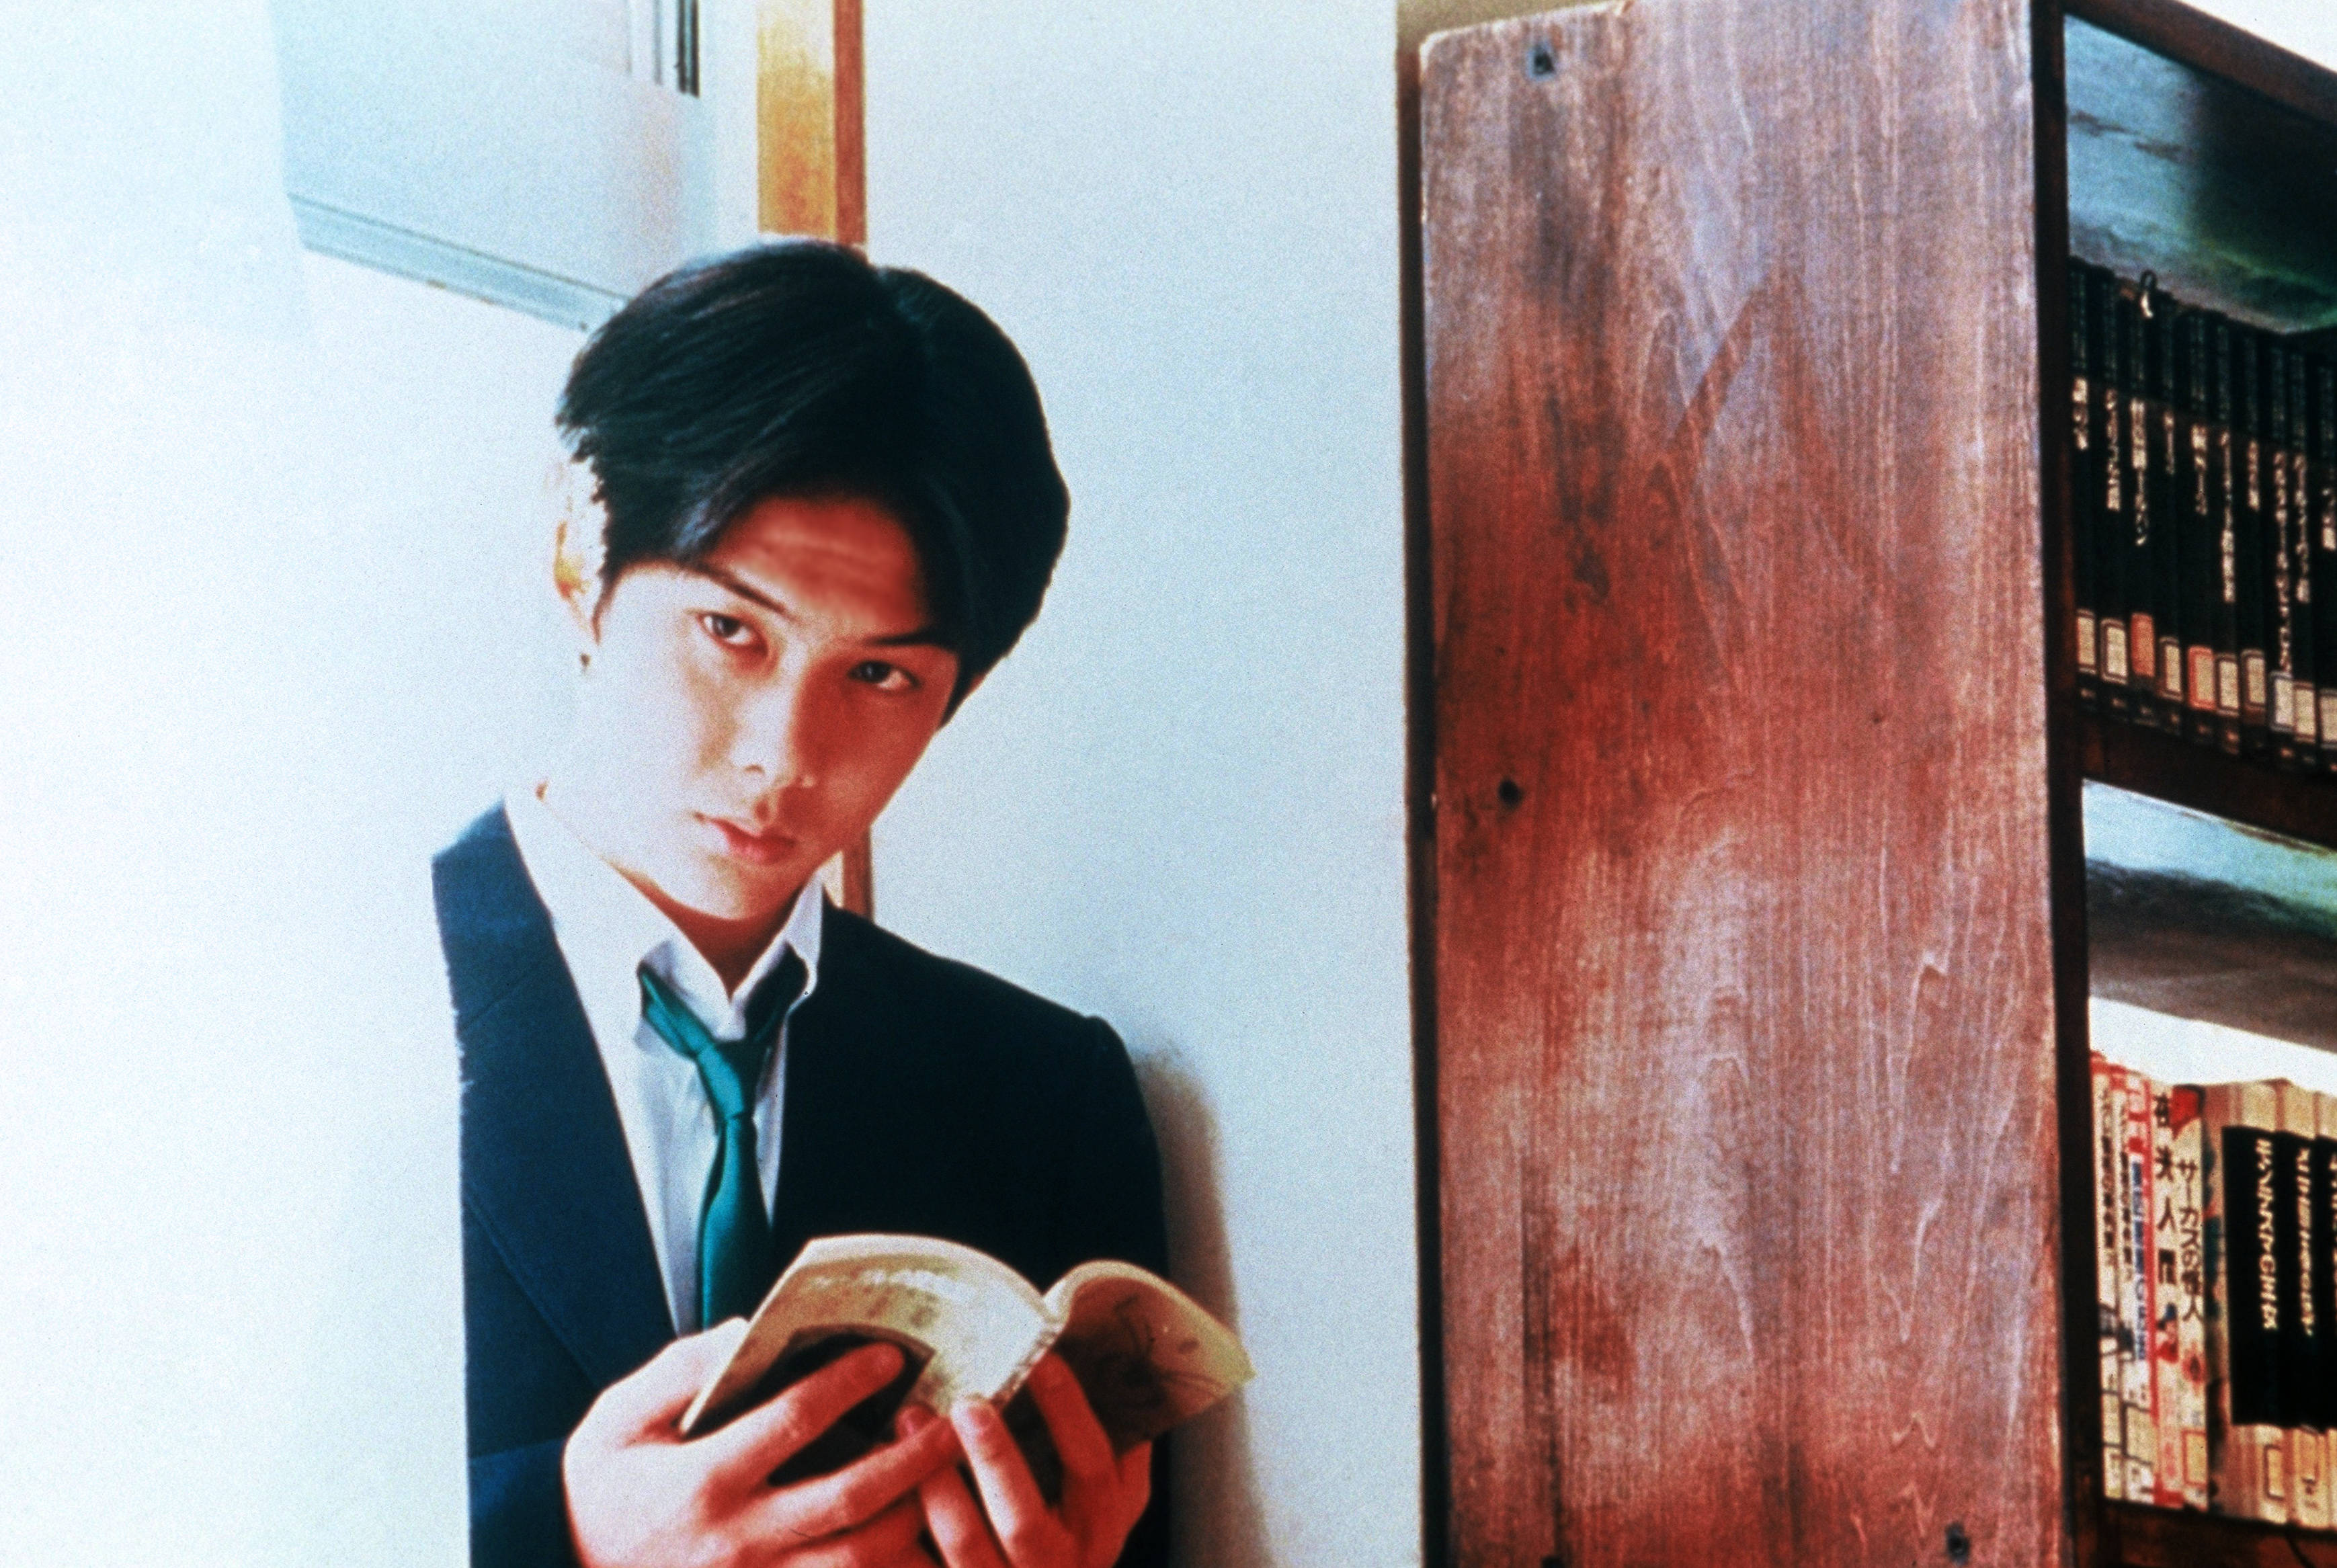 这部电影1995年日本上映,是岩井俊二的代表作,主演中山美穗,还有当时